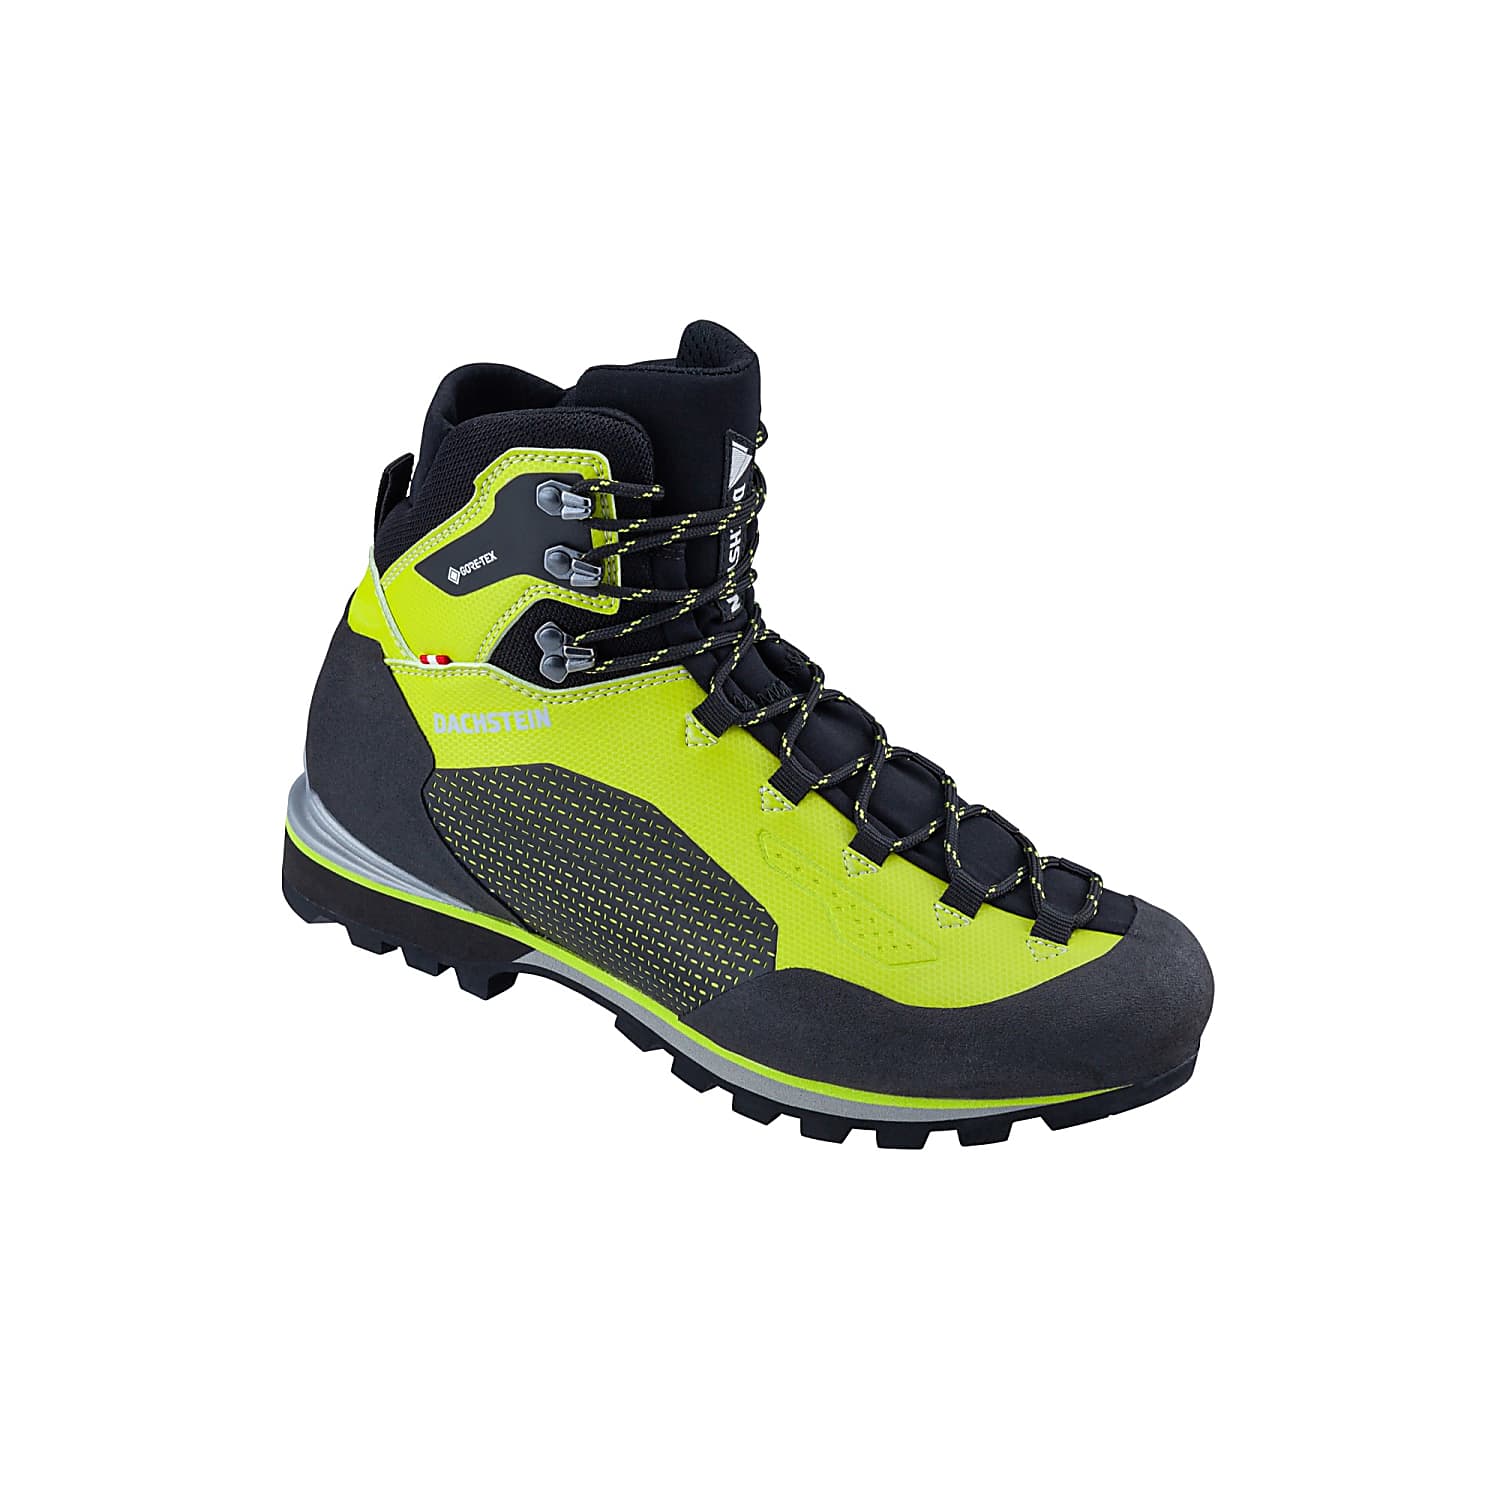 Dachstein Serles GTX - Mountaineering boots - Men's